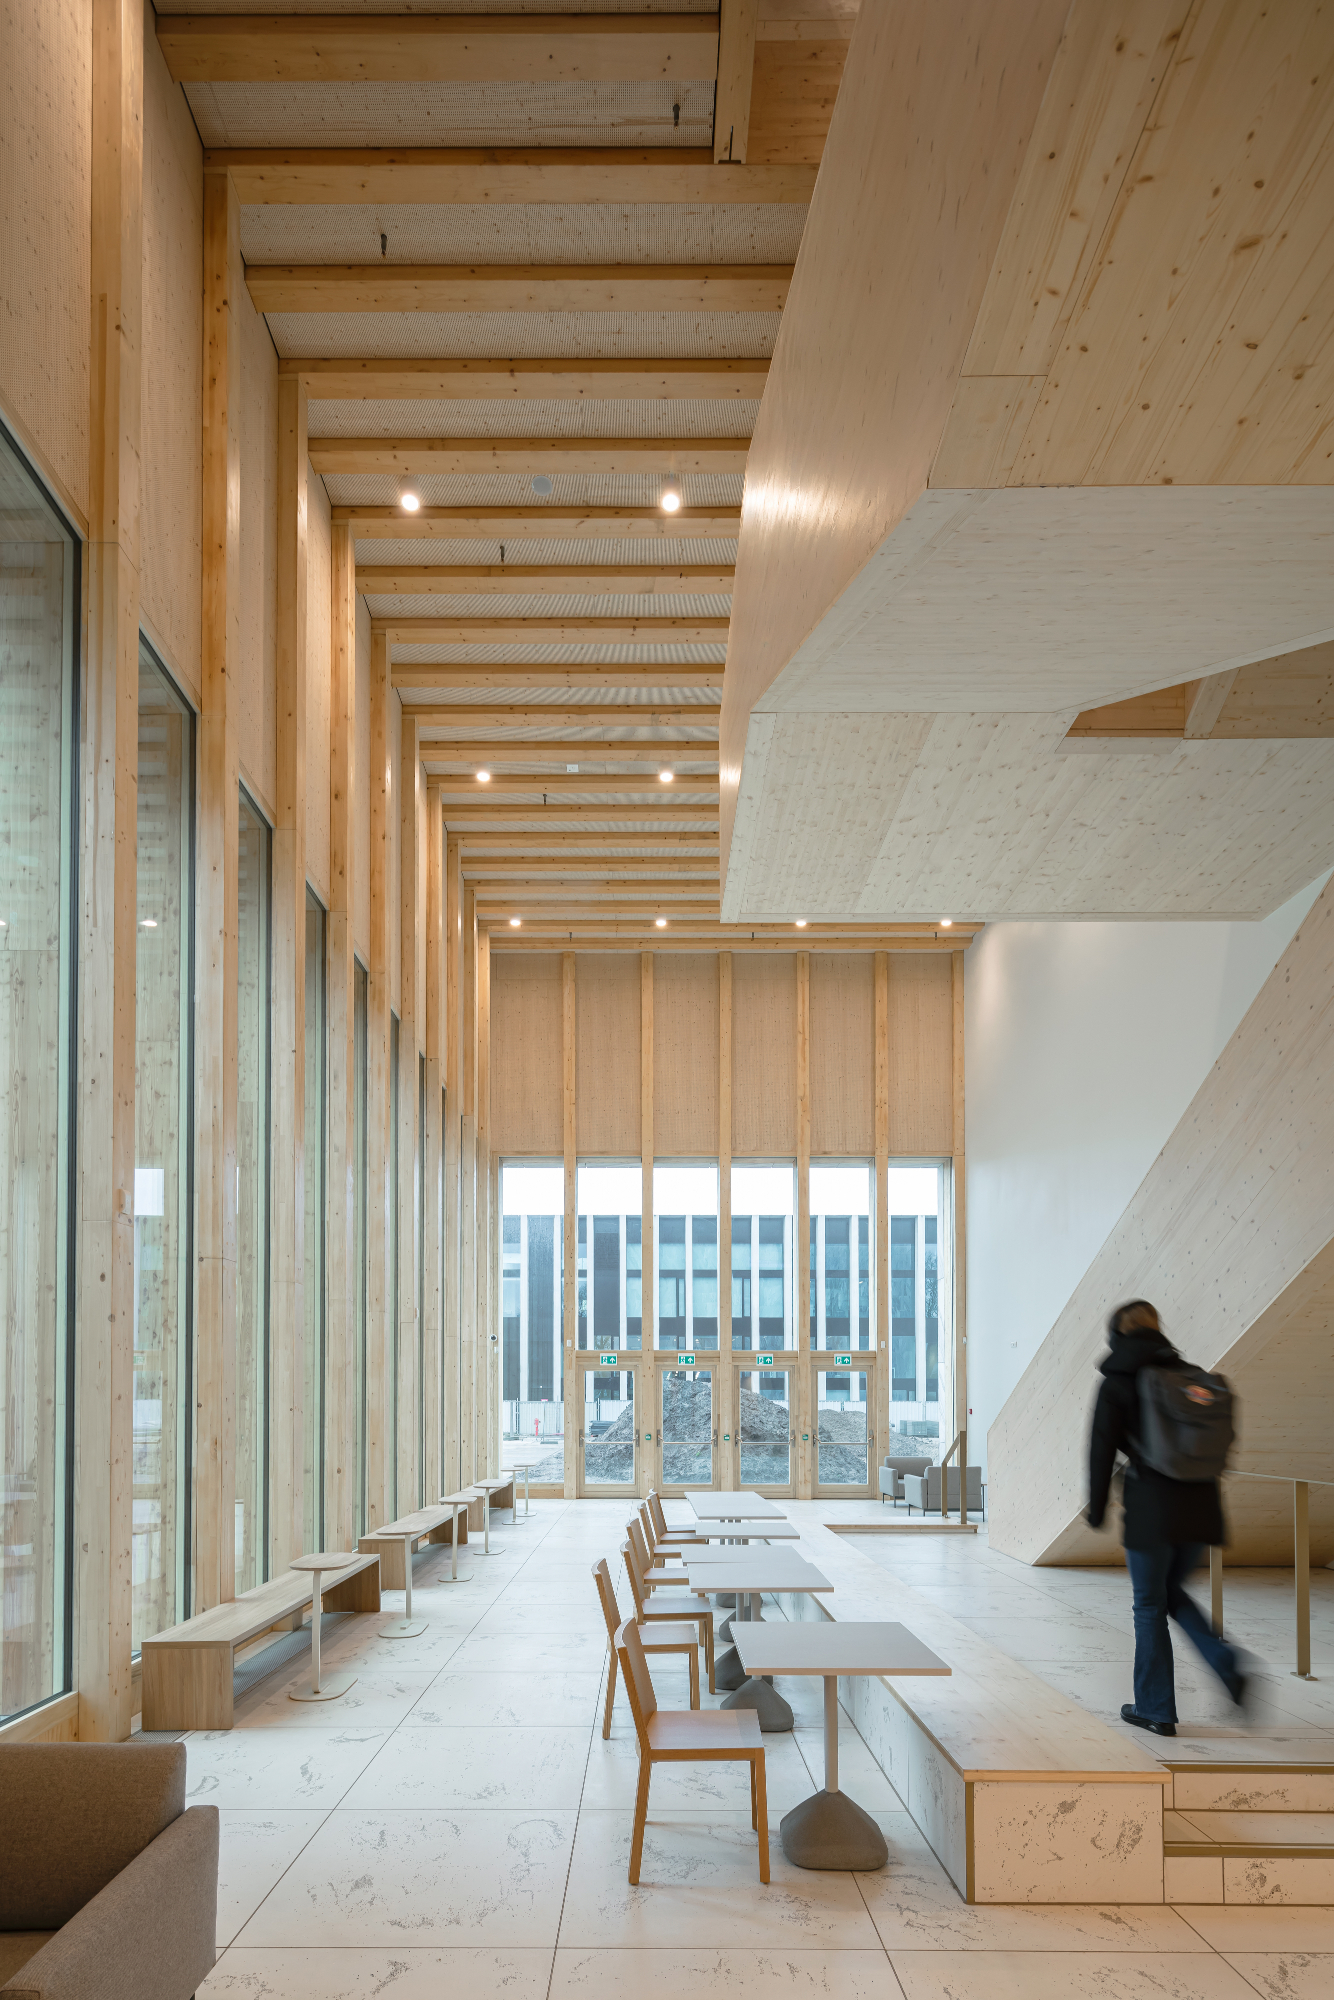 Eerste houten college-gebouw in Europa